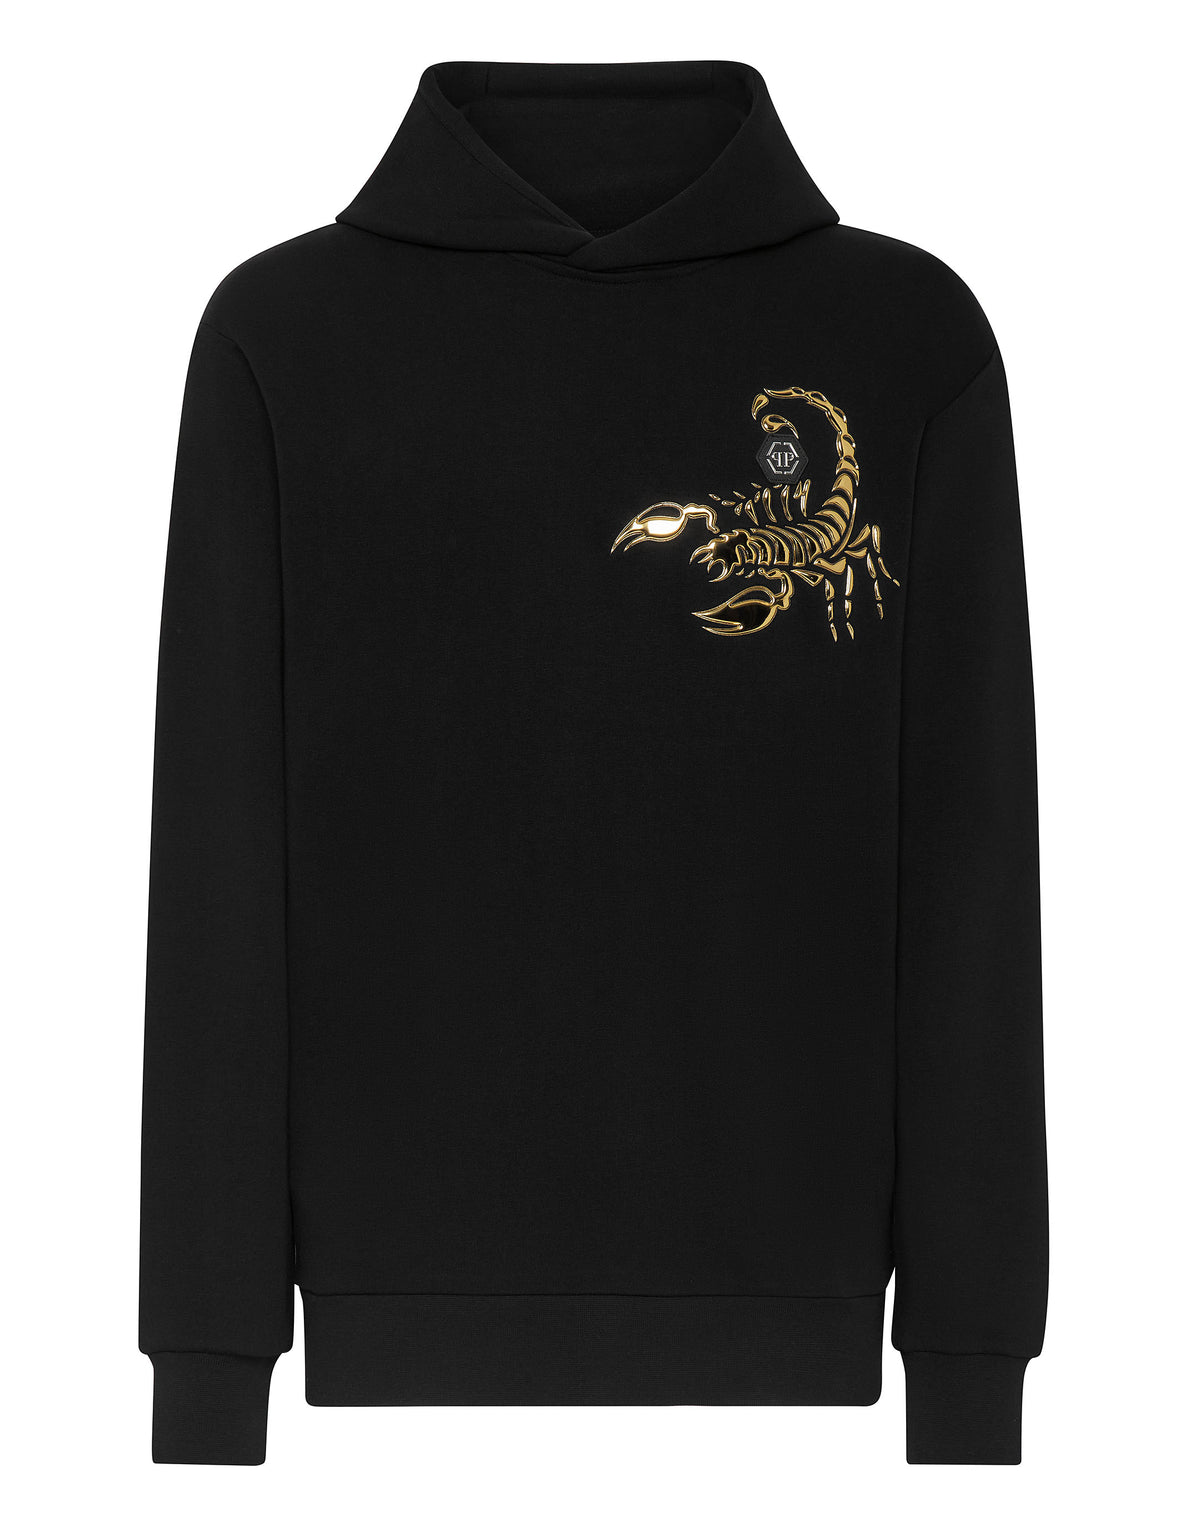 Hoodie Sweatshirt Scorpion black / gold